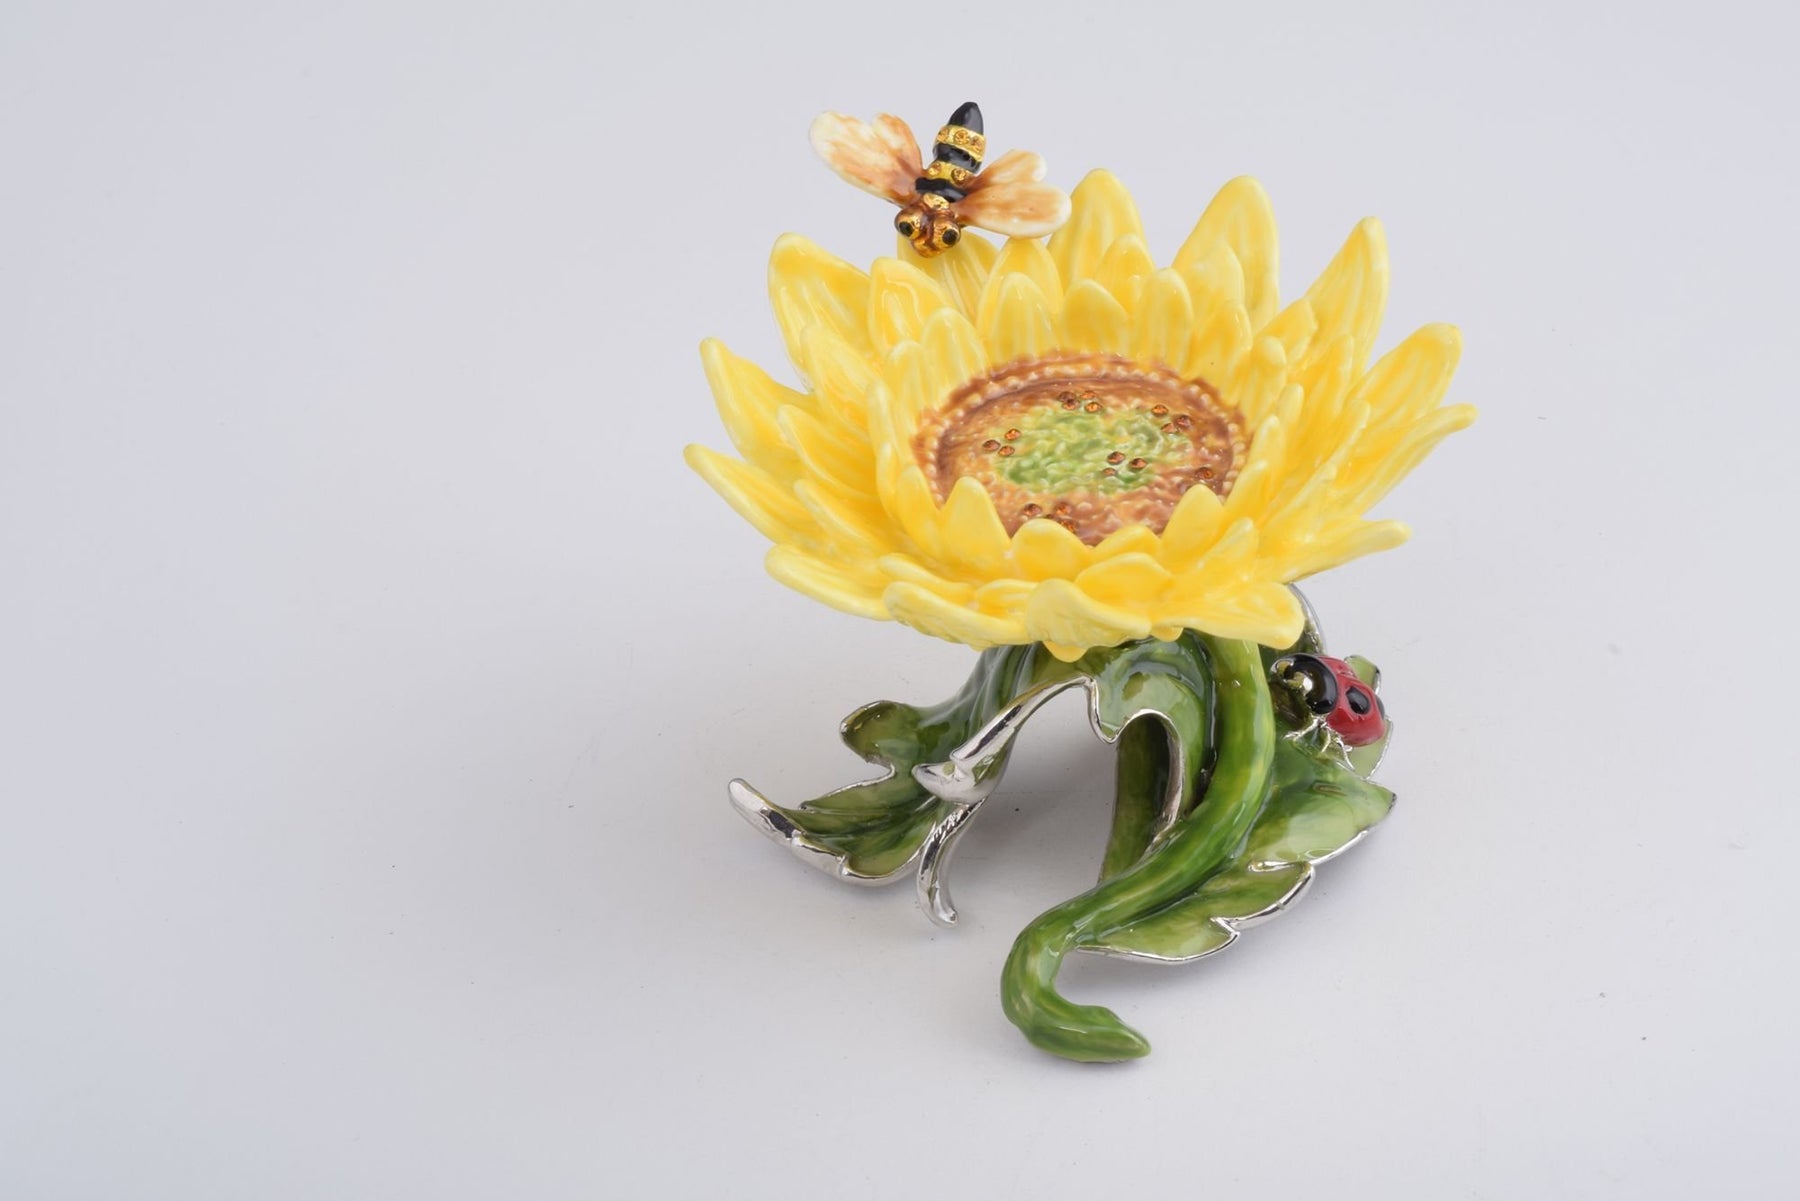 Keren Kopal Yellow Sunflower  83.50